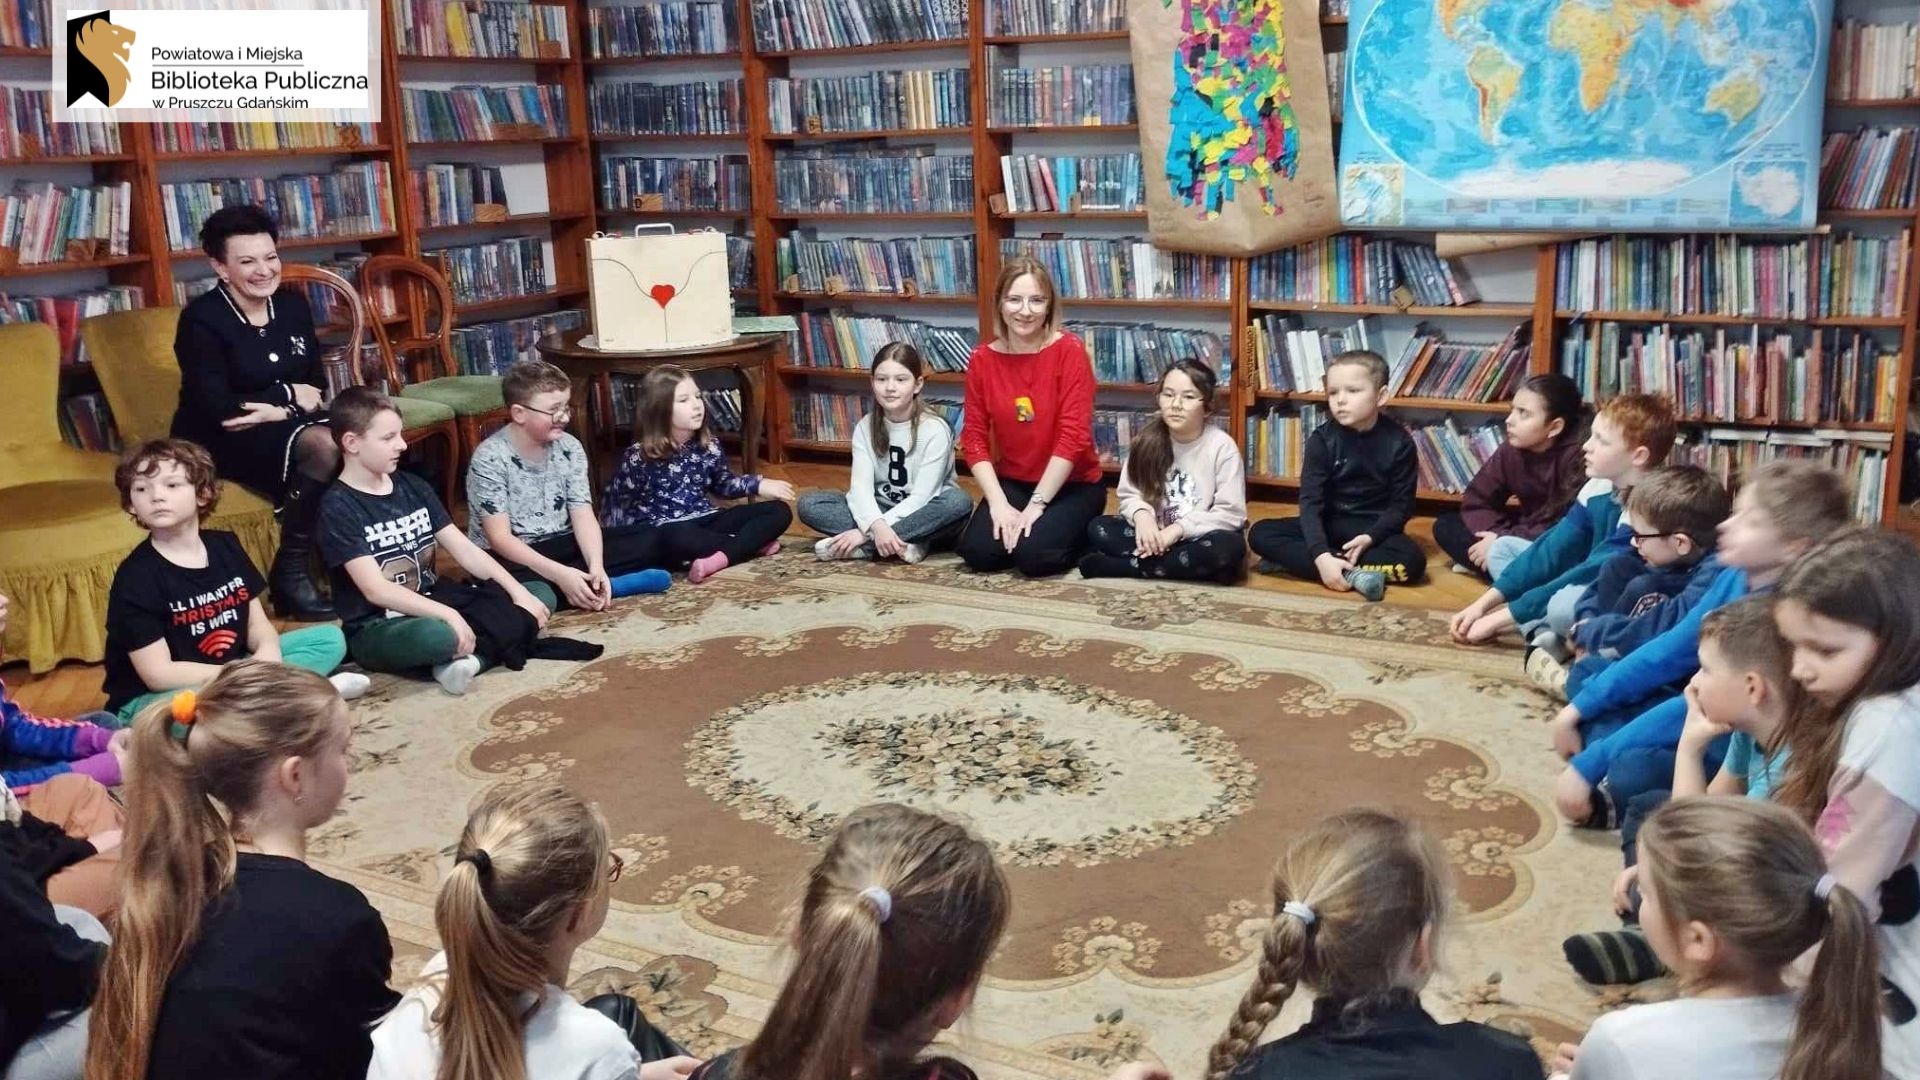 Grupa dzieci siedzi w okręgu na dywanie. Między nimi siedzi bibliotekarka. W tle regały z książkami oraz stolik, na którym stoi drewniany teatrzyk.